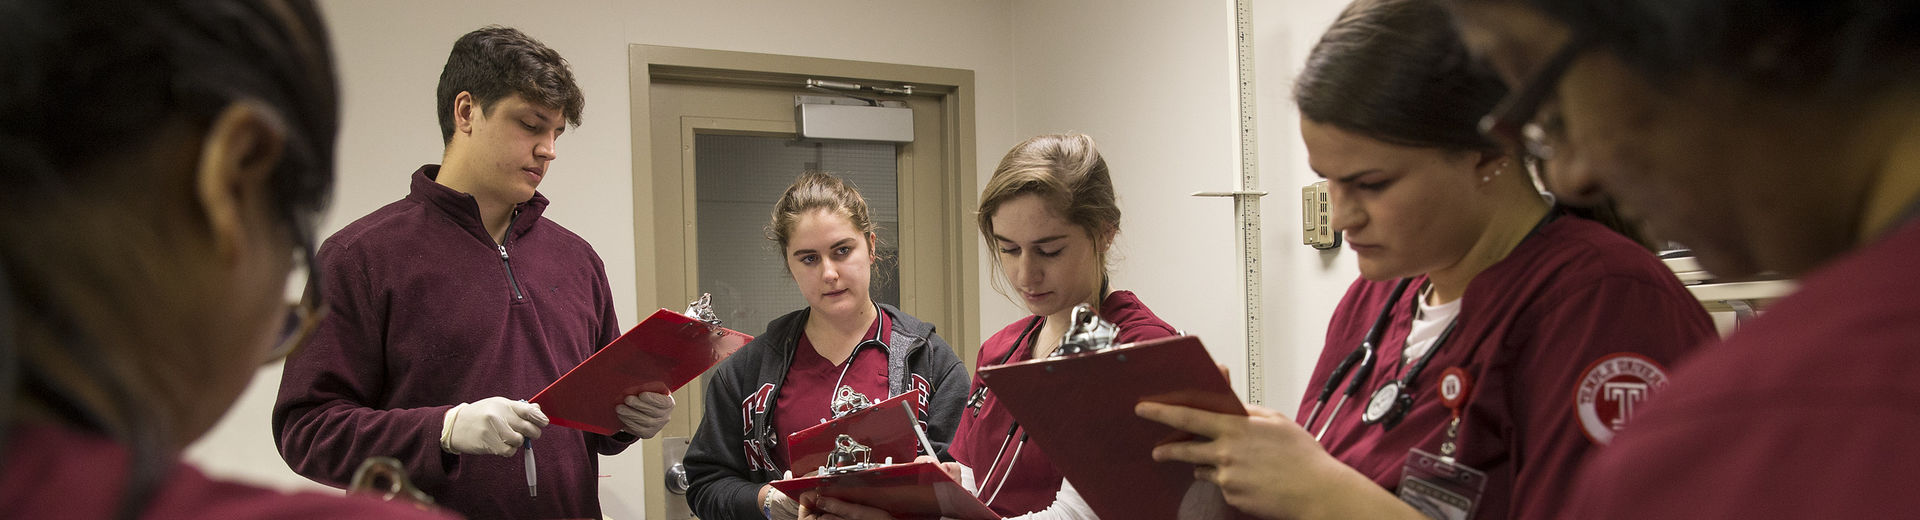 Nursing students reviewing medical charts.